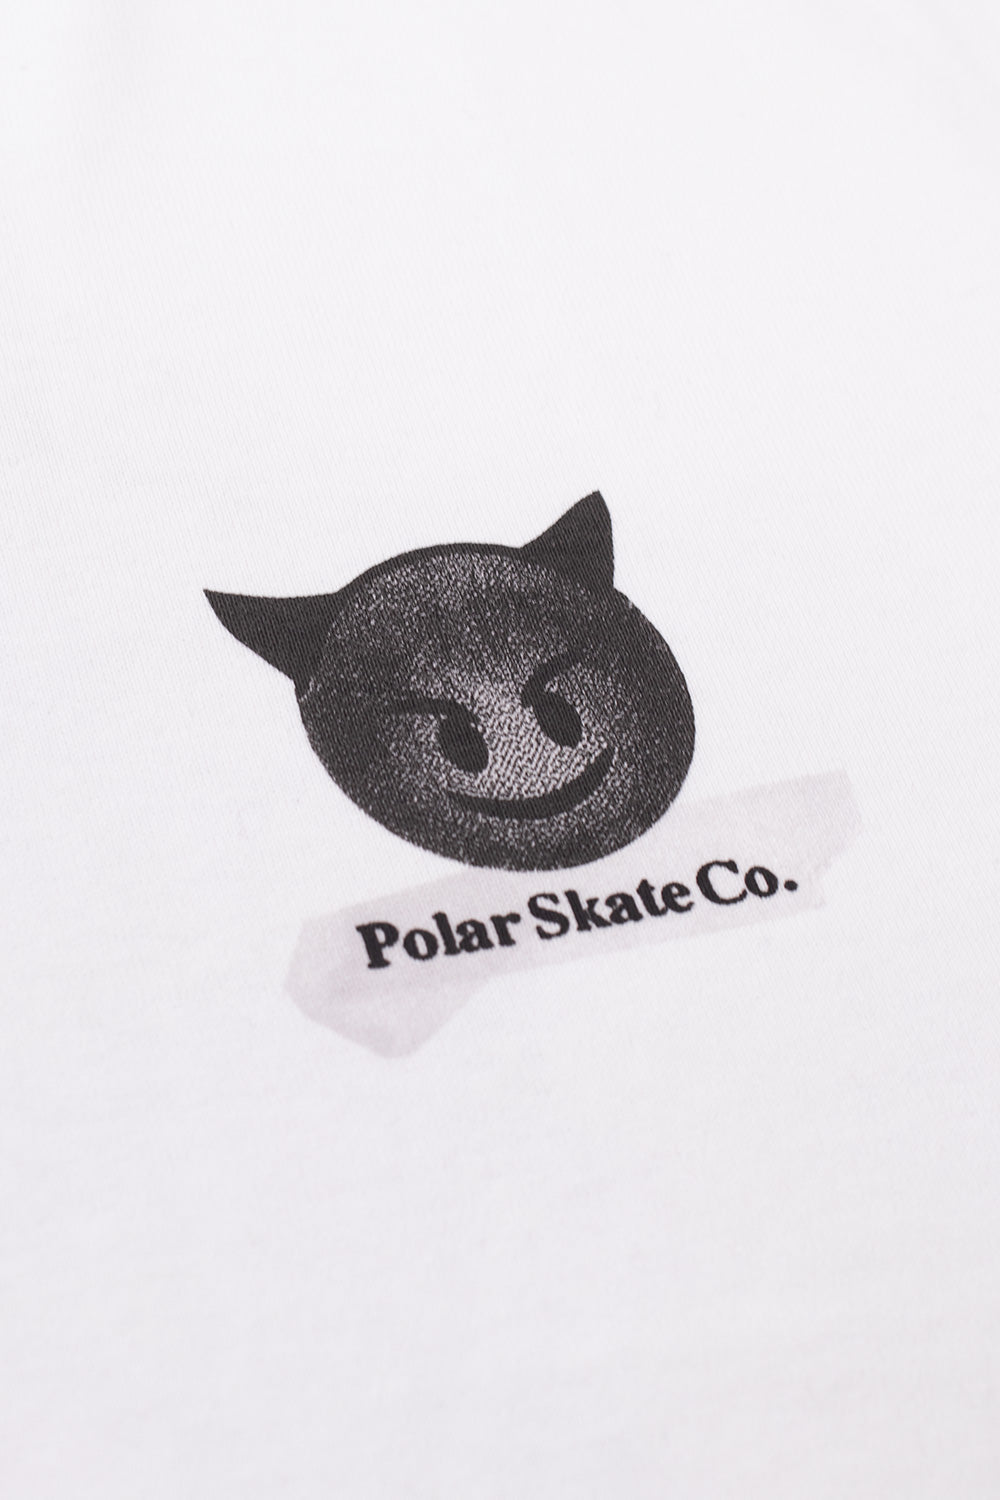 Polar Skate Co. Welcome 2 The World T-Shirt White - BONKERS